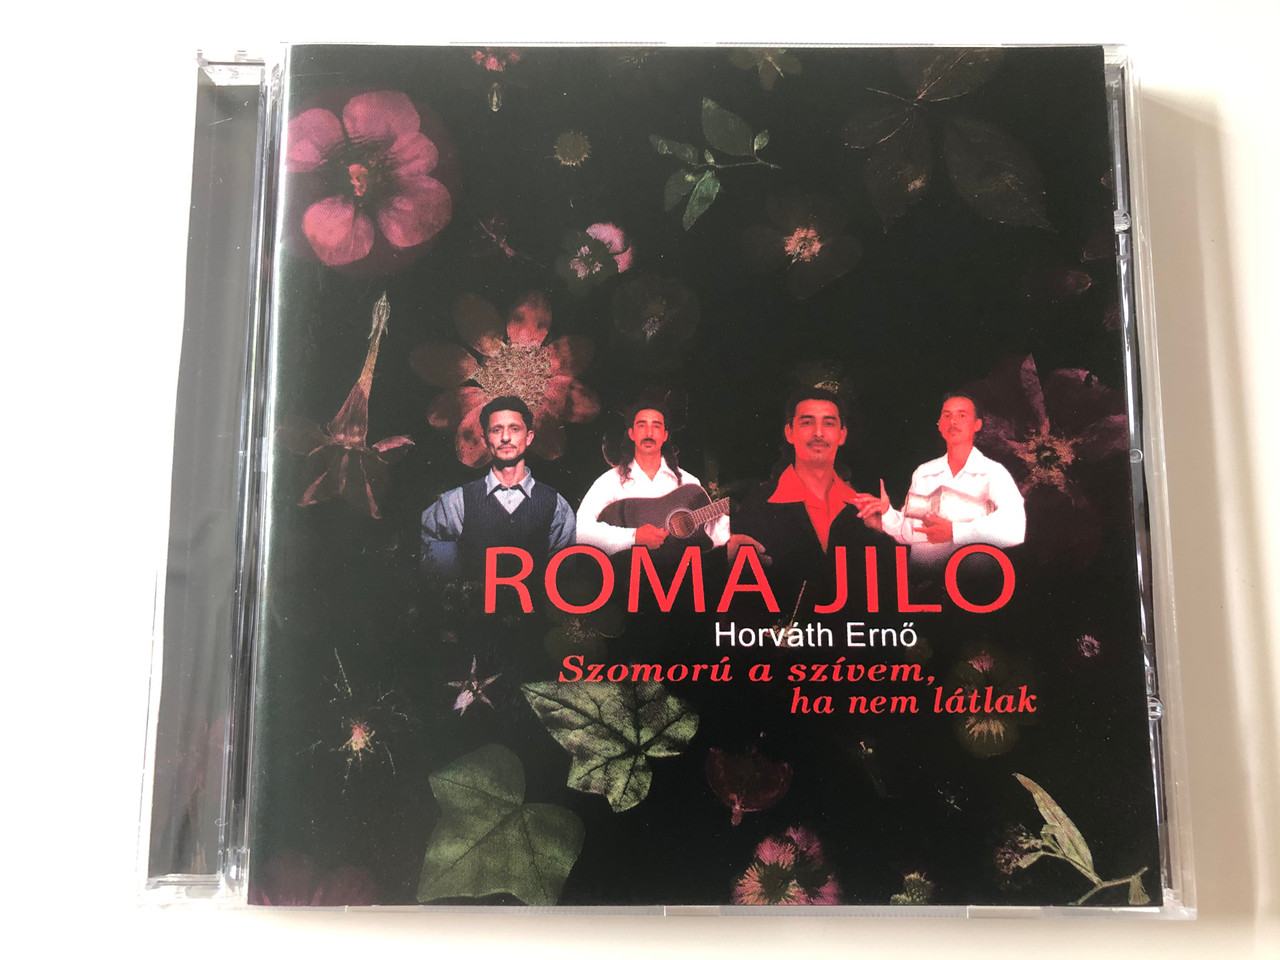 Roma Jilo - Horváth Ernő / Szomorú a szívem, ha nem látlak / Firestarter  Publishing Audio CD 2005 / 455702-4 - bibleinmylanguage